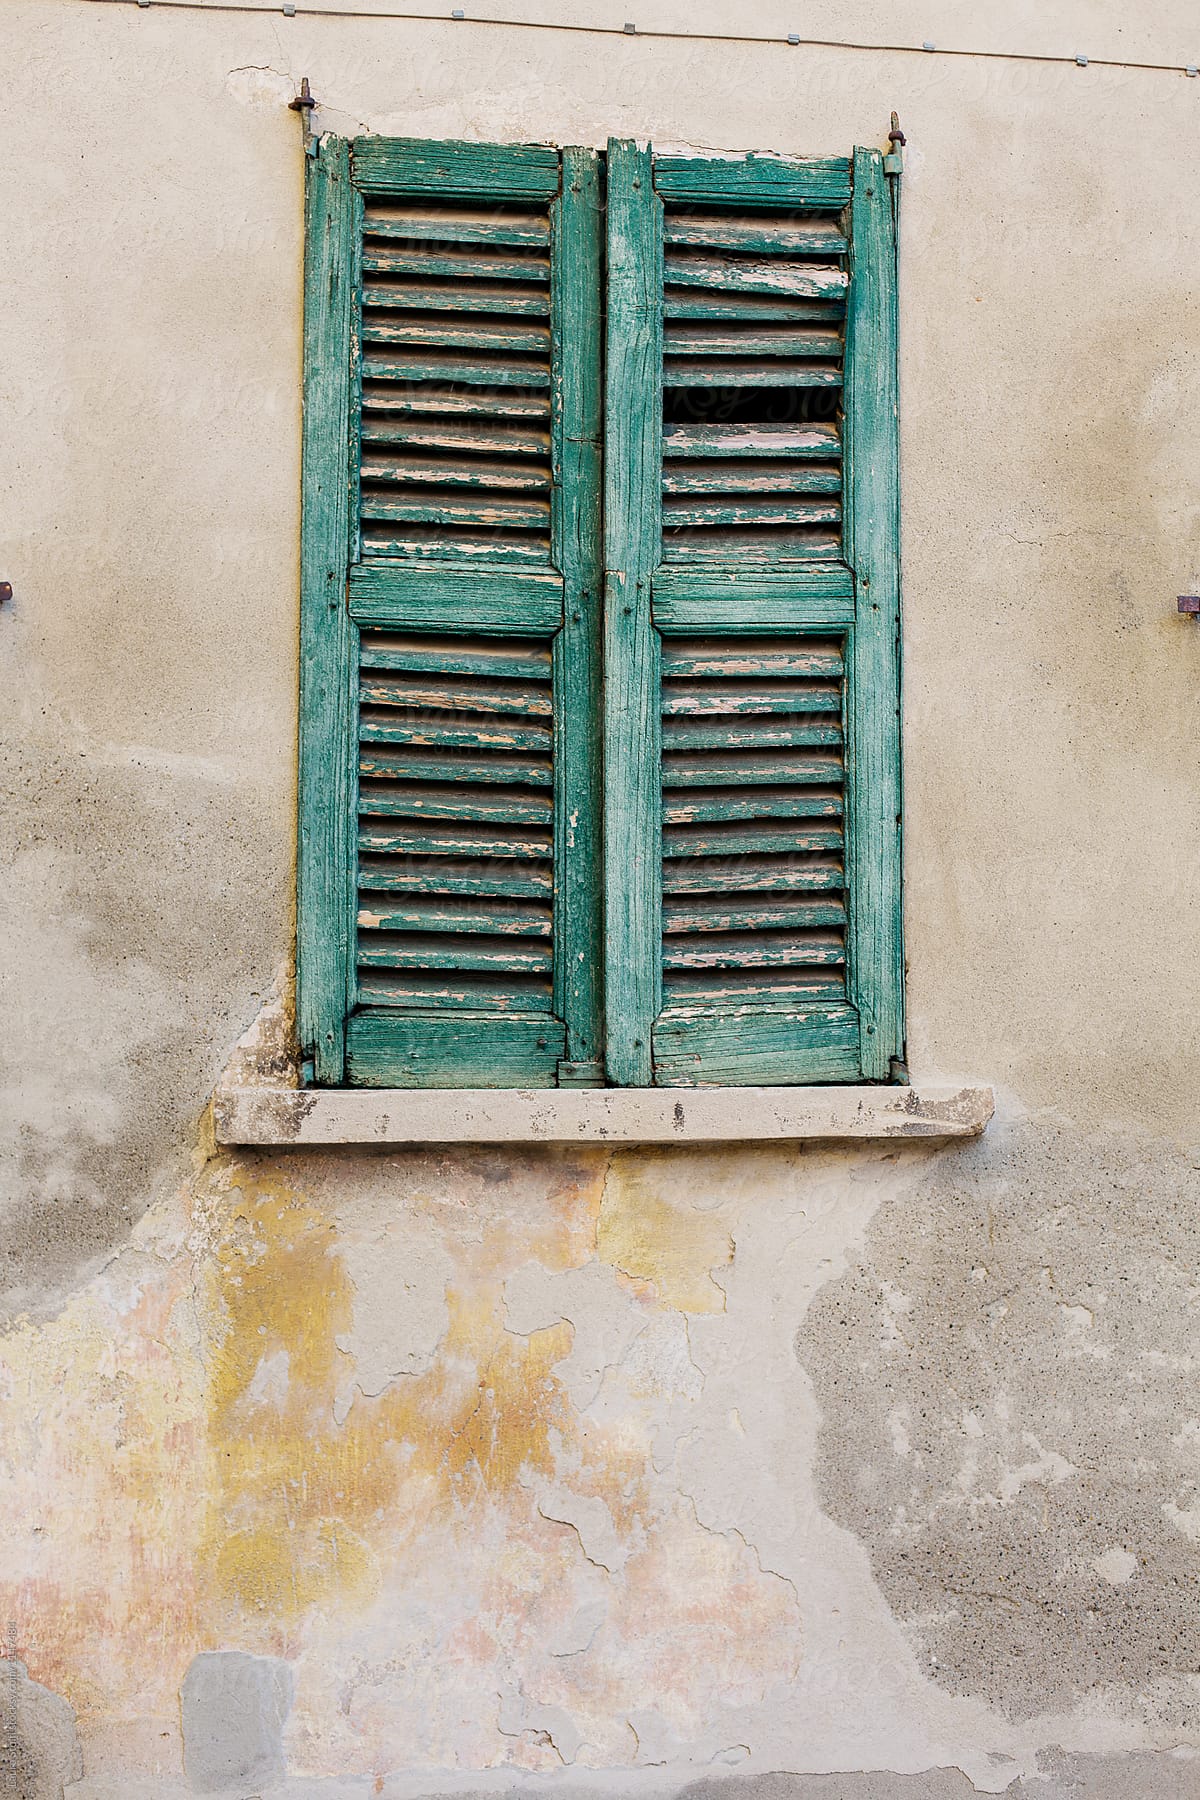 Broken wooden window shutters seen on old italian building